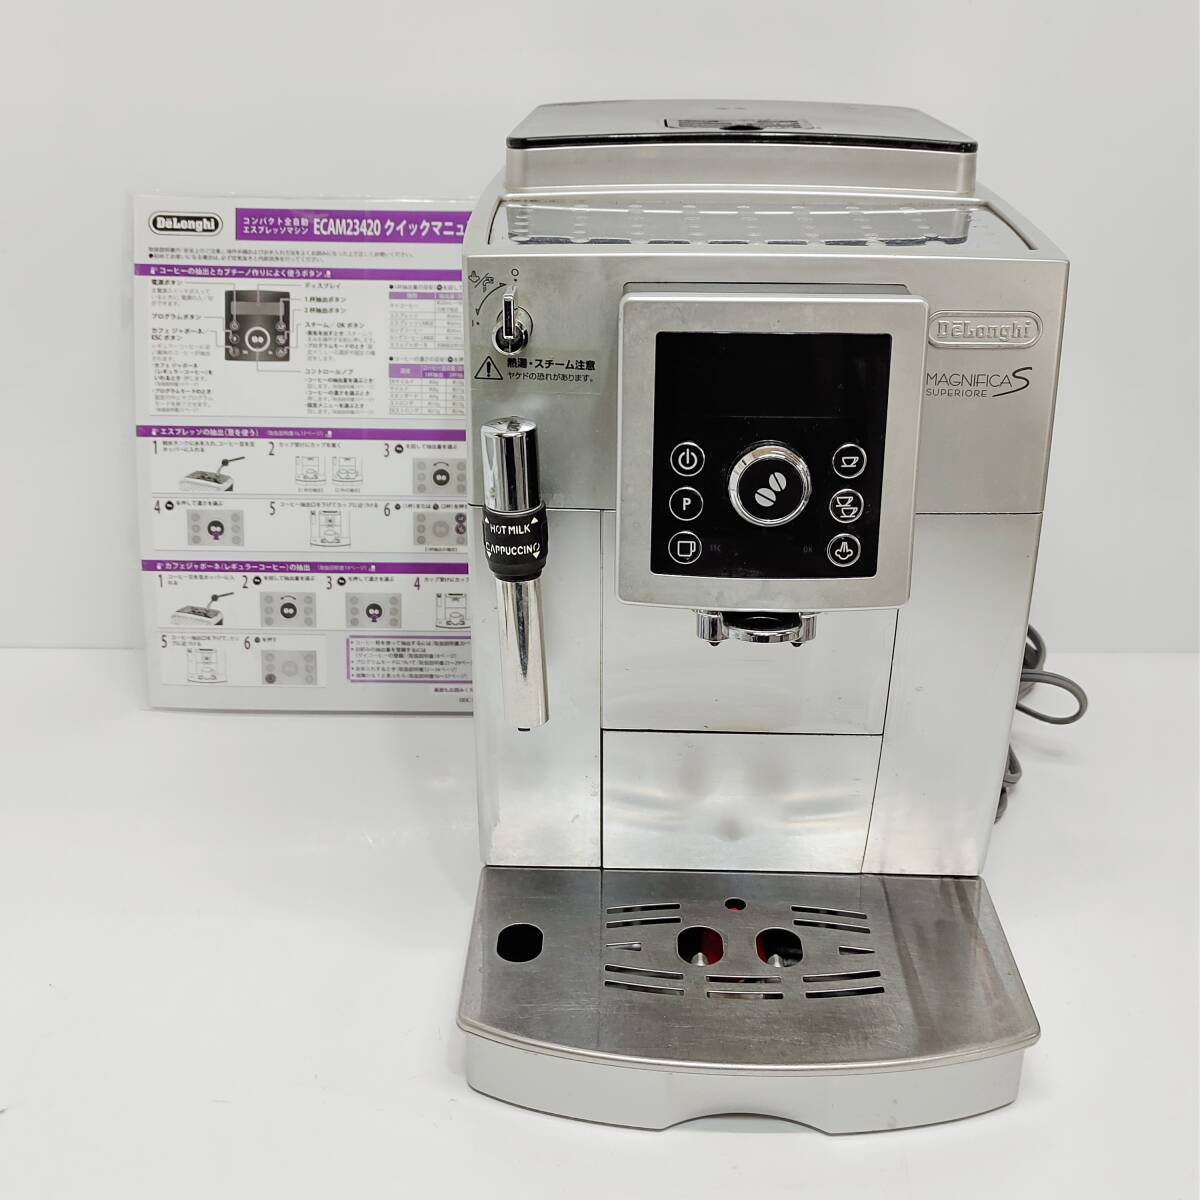 ●デロンギ ECAM23420SB コンパクト全自動エスプレッソマシン DeLonghi コーヒーメーカー マグニフィカS スペリオレ B948_画像1